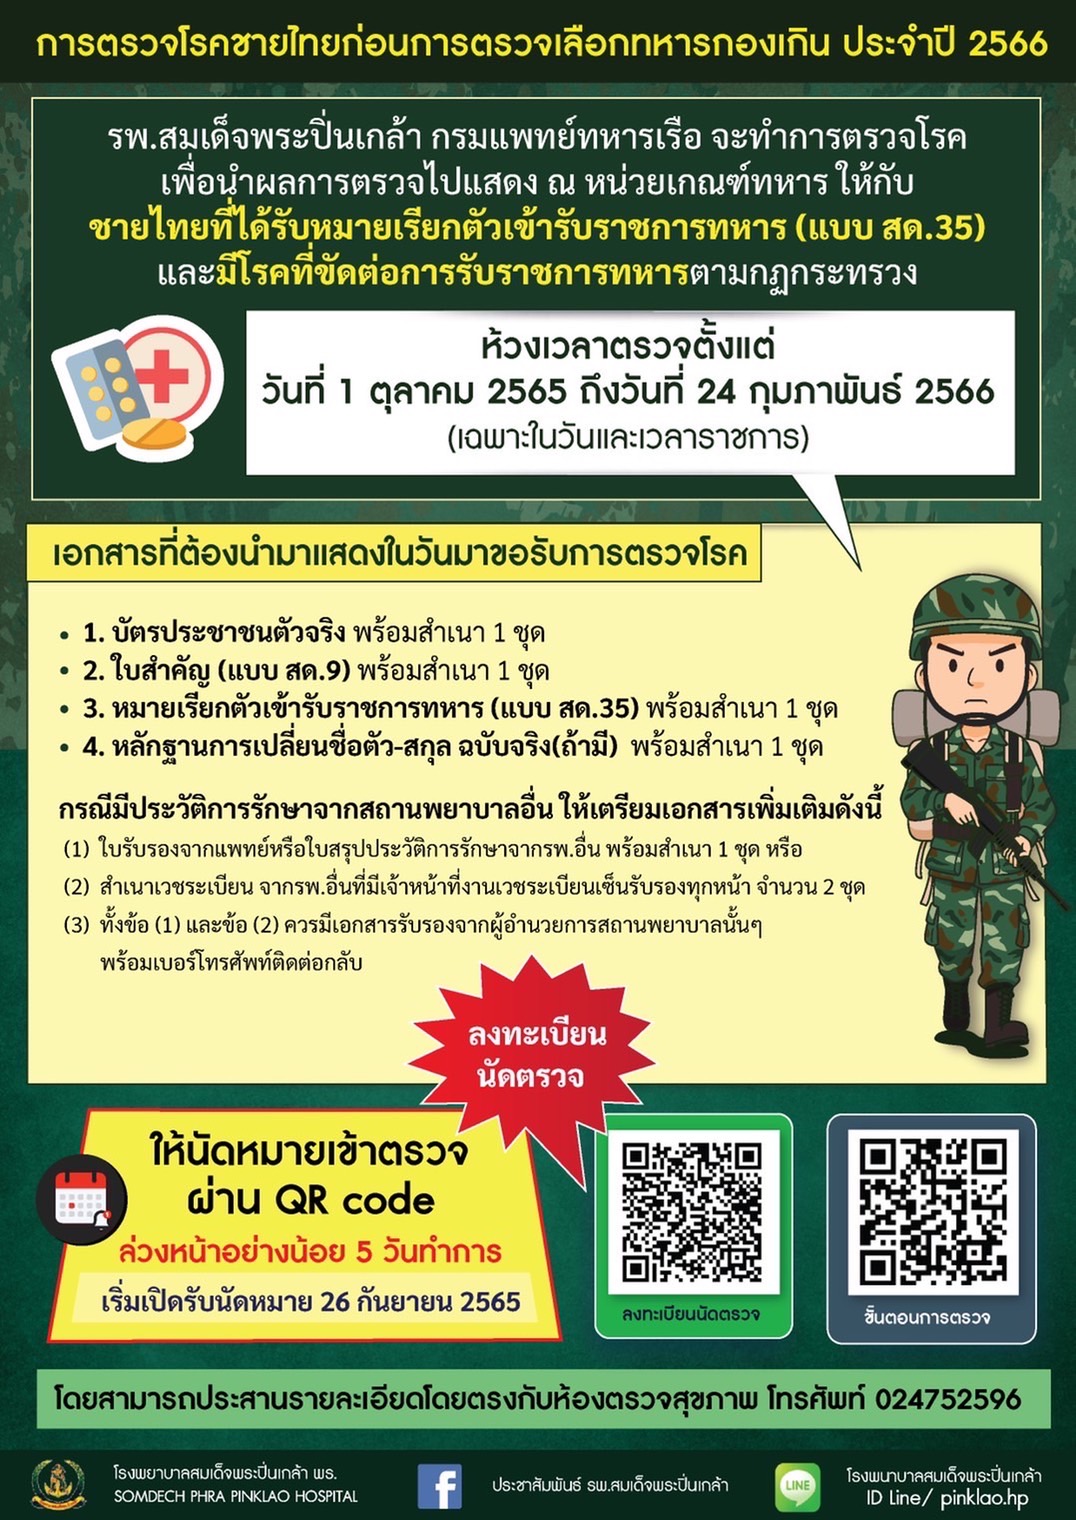 ประชาสัมพันธ์ เรื่อง การตรวจโรคชายไทยก่อนการตรวจเลือกทหารกองเกิน ประจำปี 2566